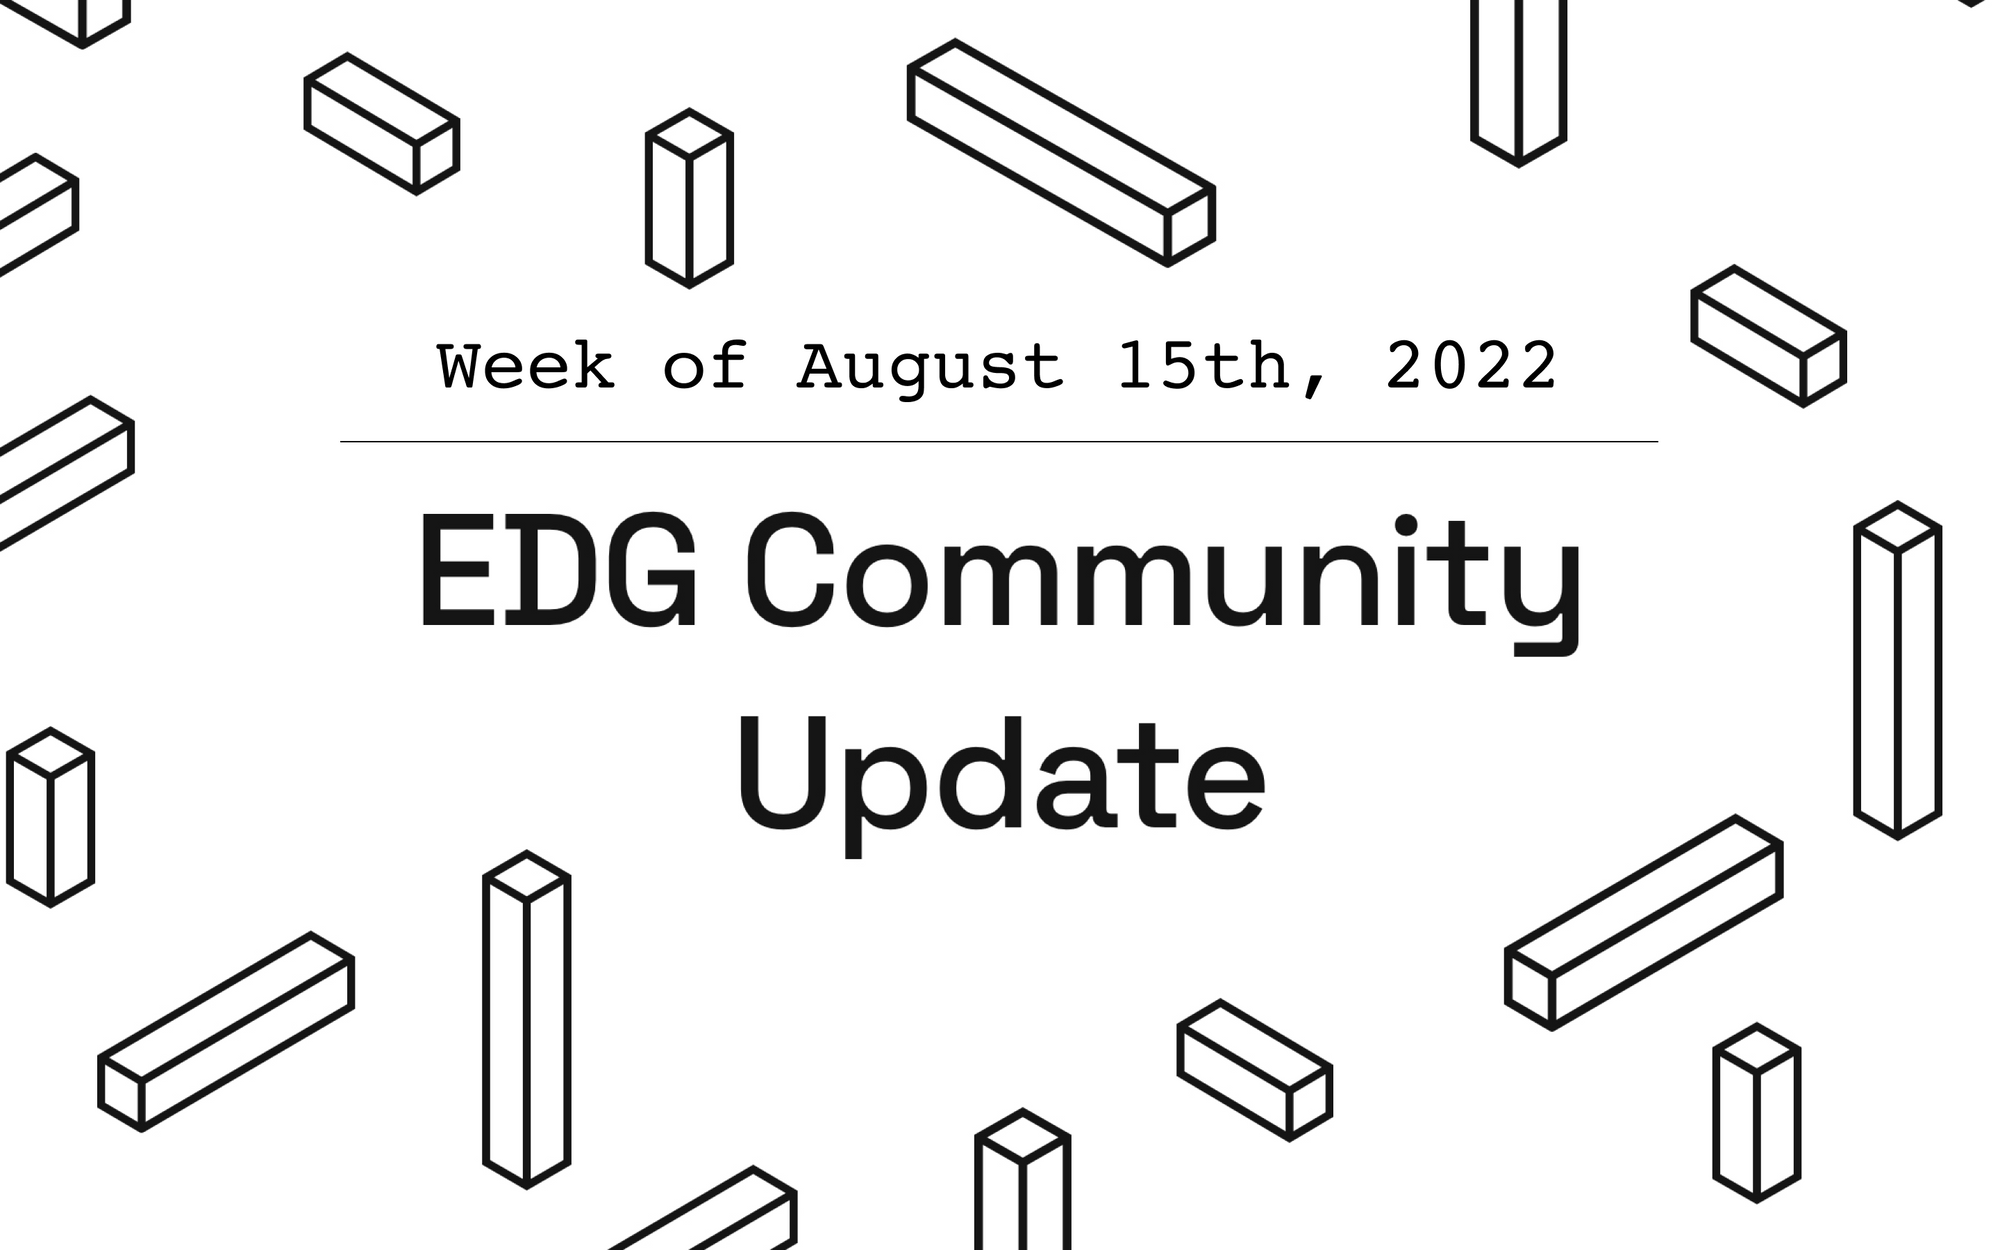 EDG Community Update: Week of August 15th, 2022